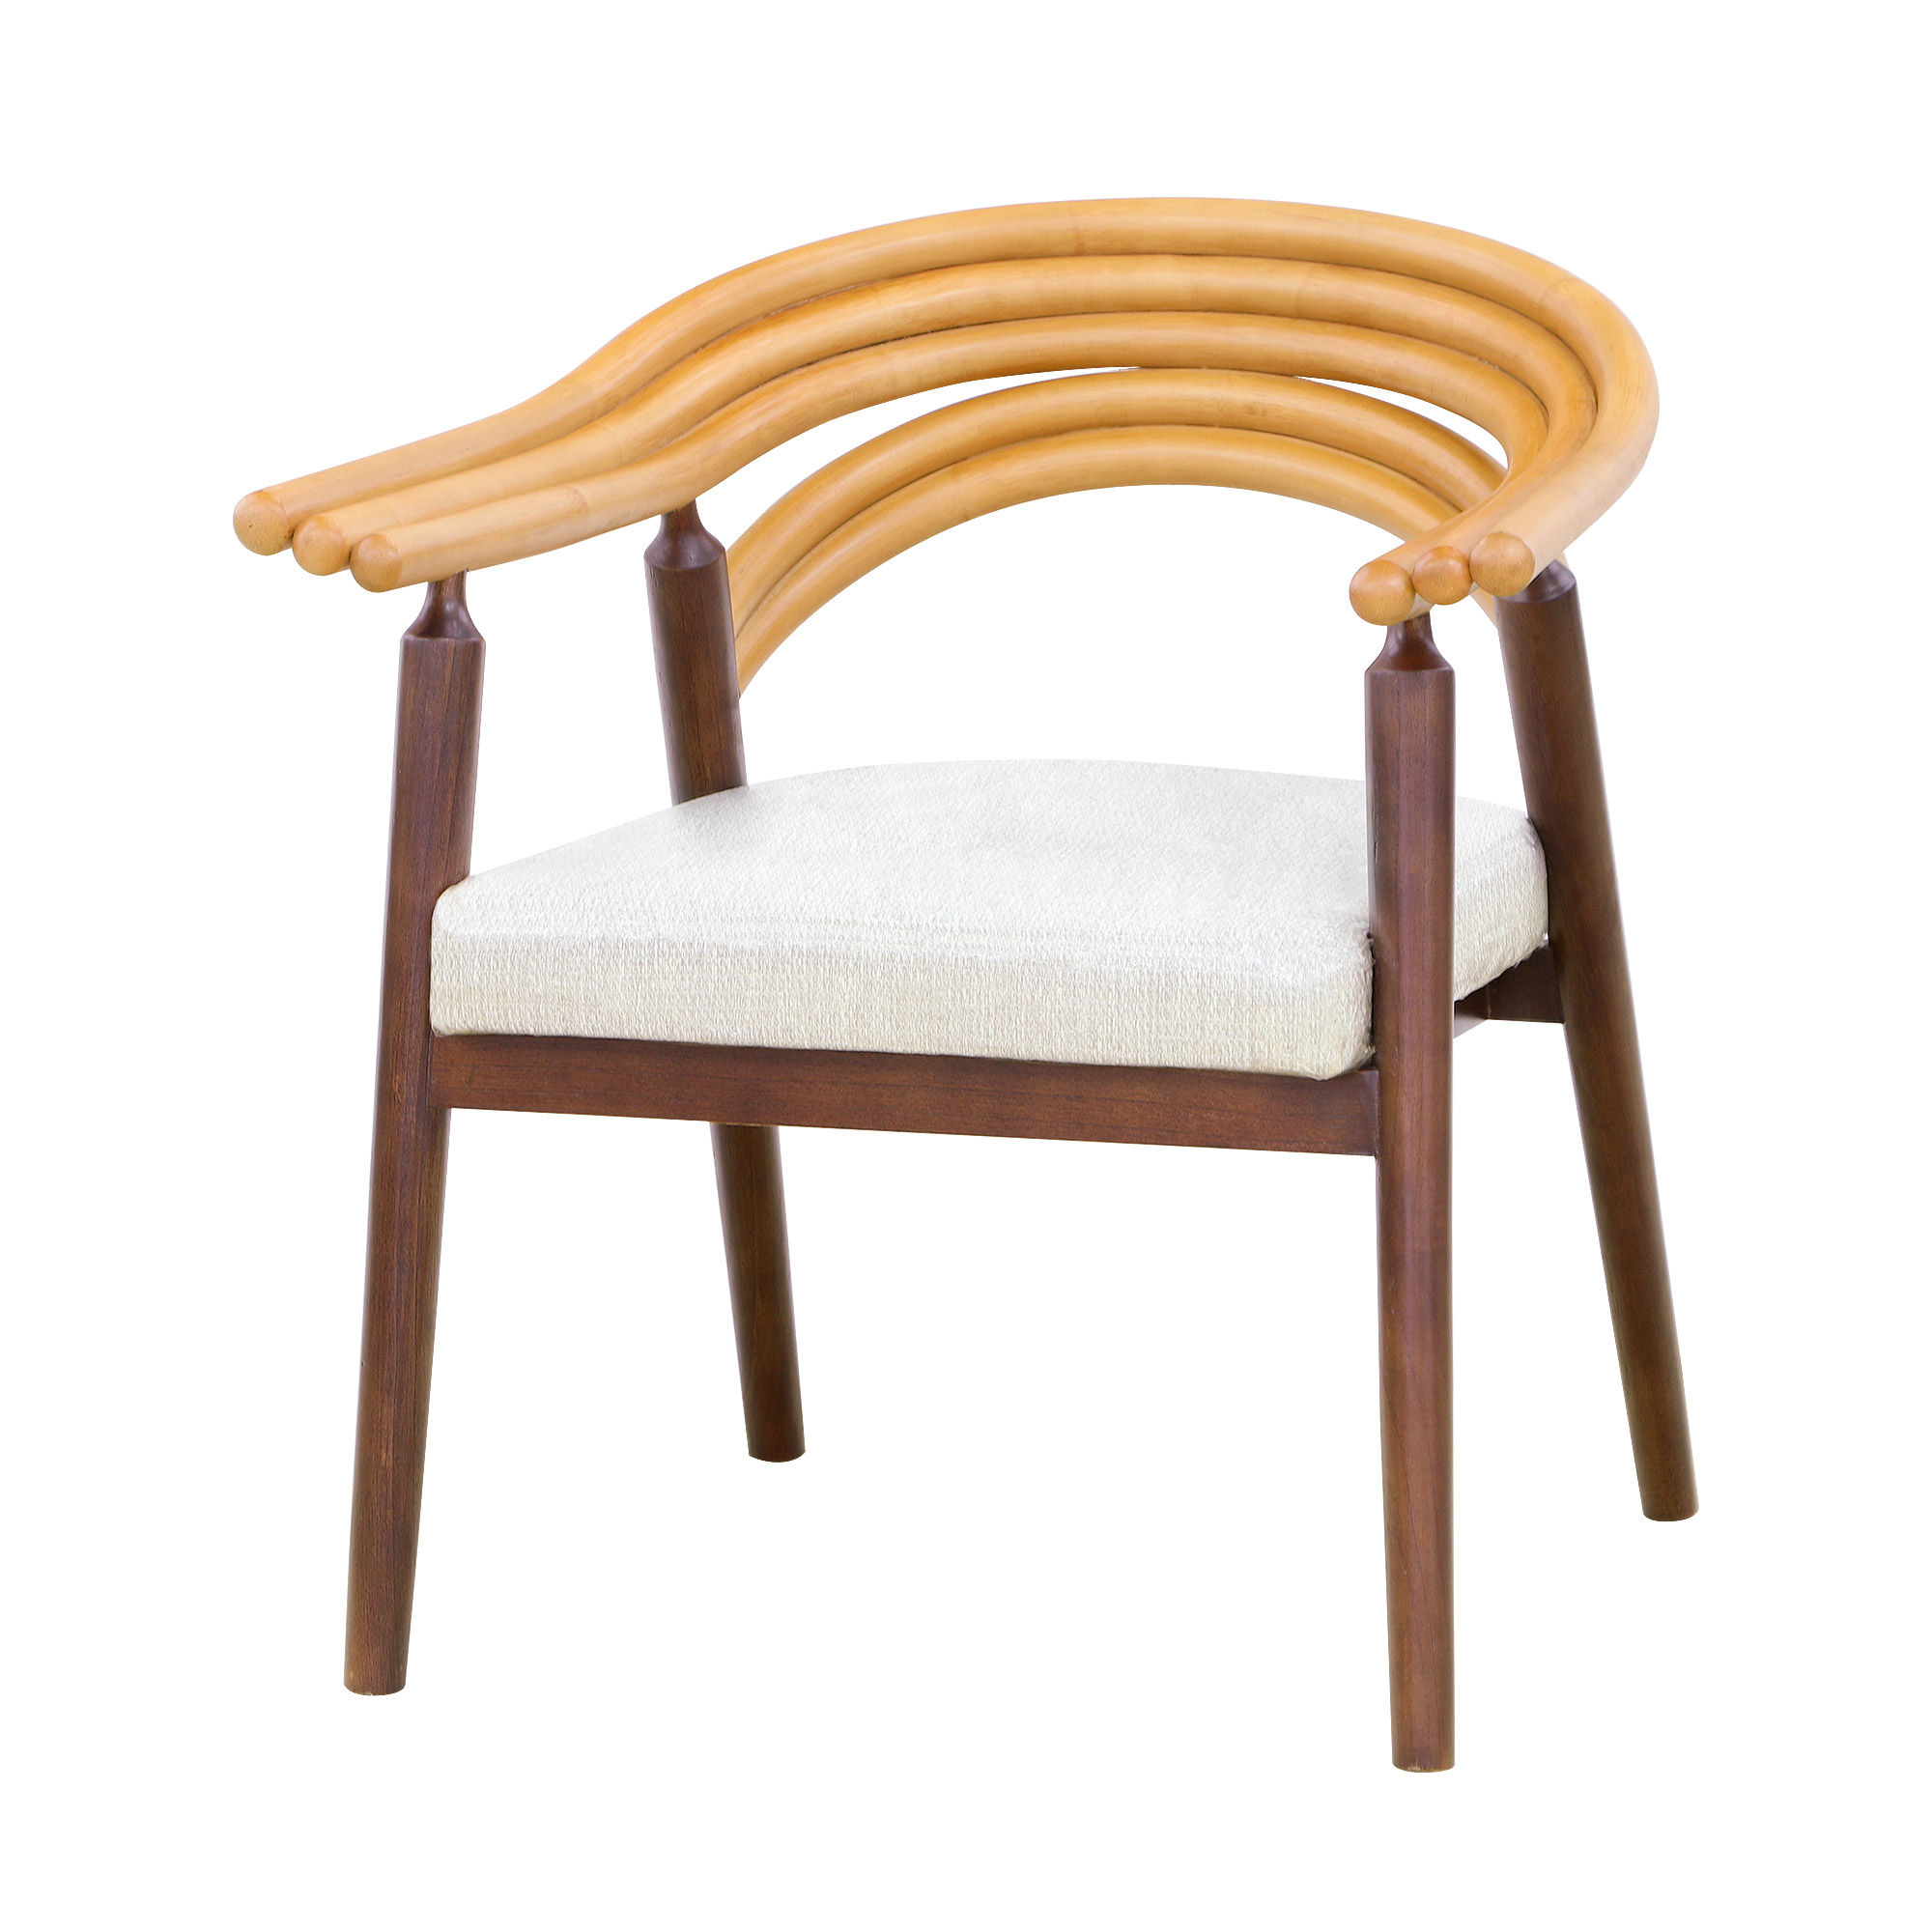 Комплект мебели Tengorattan 5 предметов из натурального ротанга, цвет коричневый, размер 89х89х74 см - фото 3